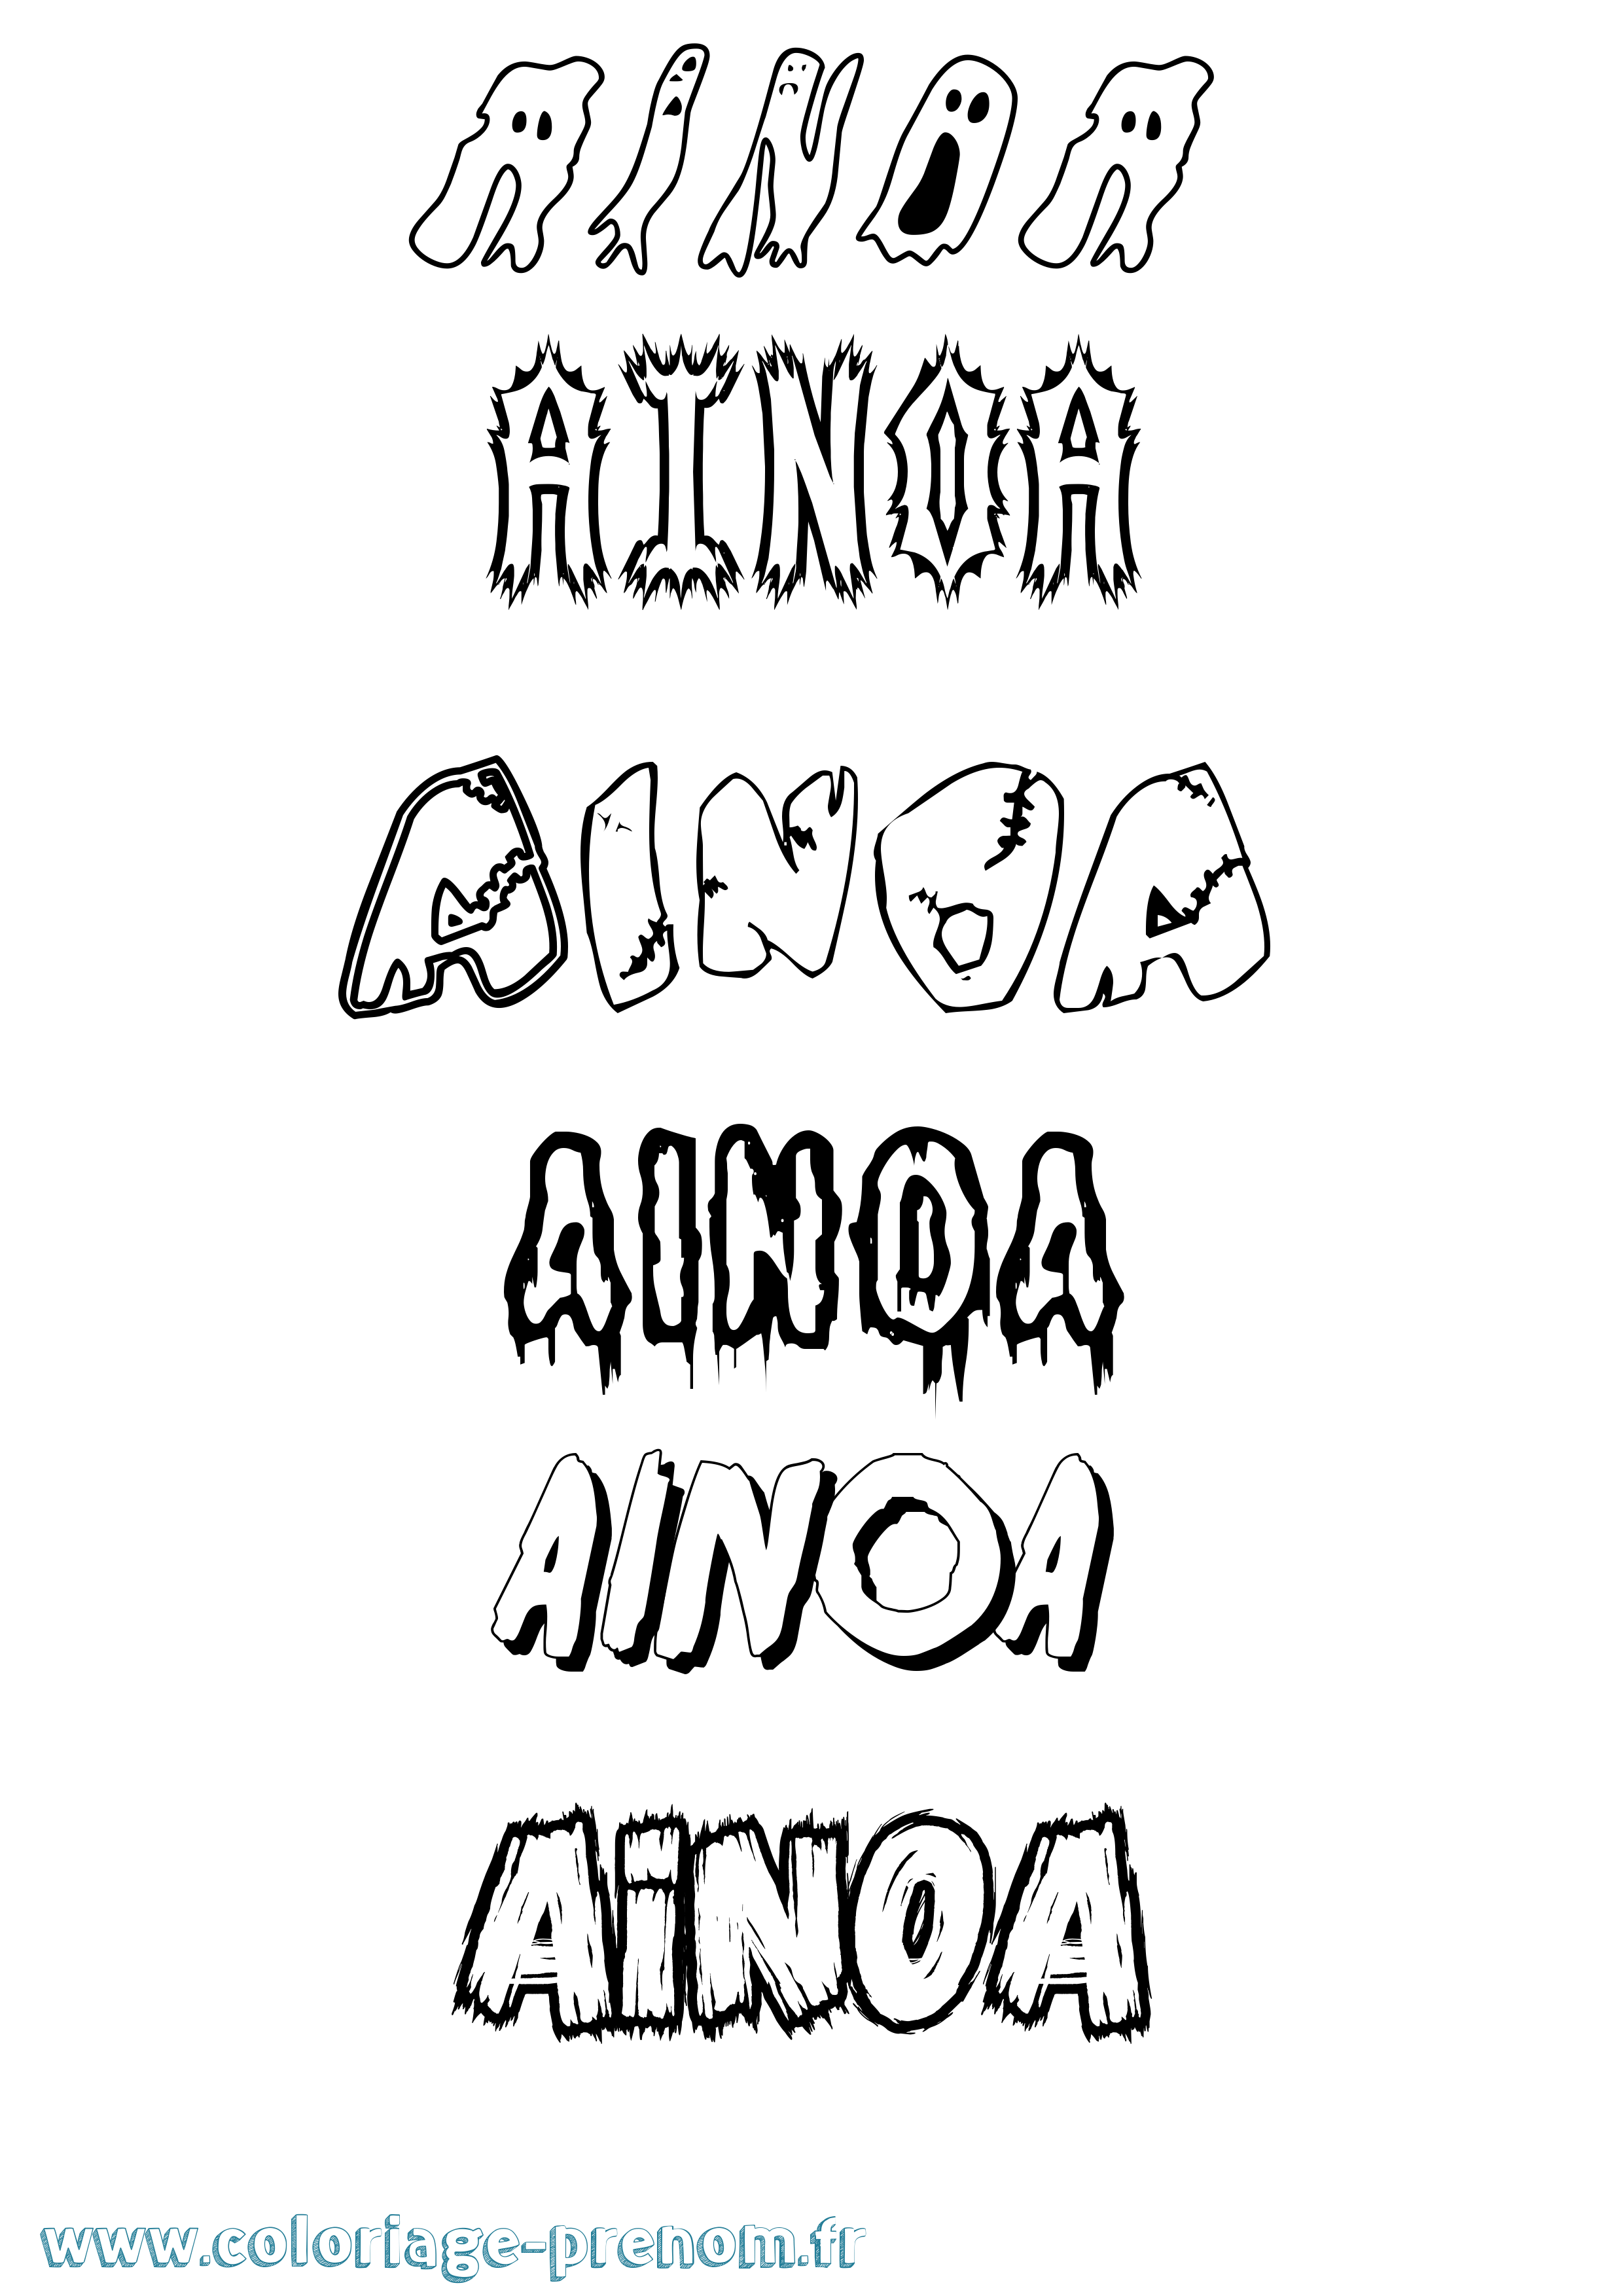 Coloriage prénom Ainoa Frisson